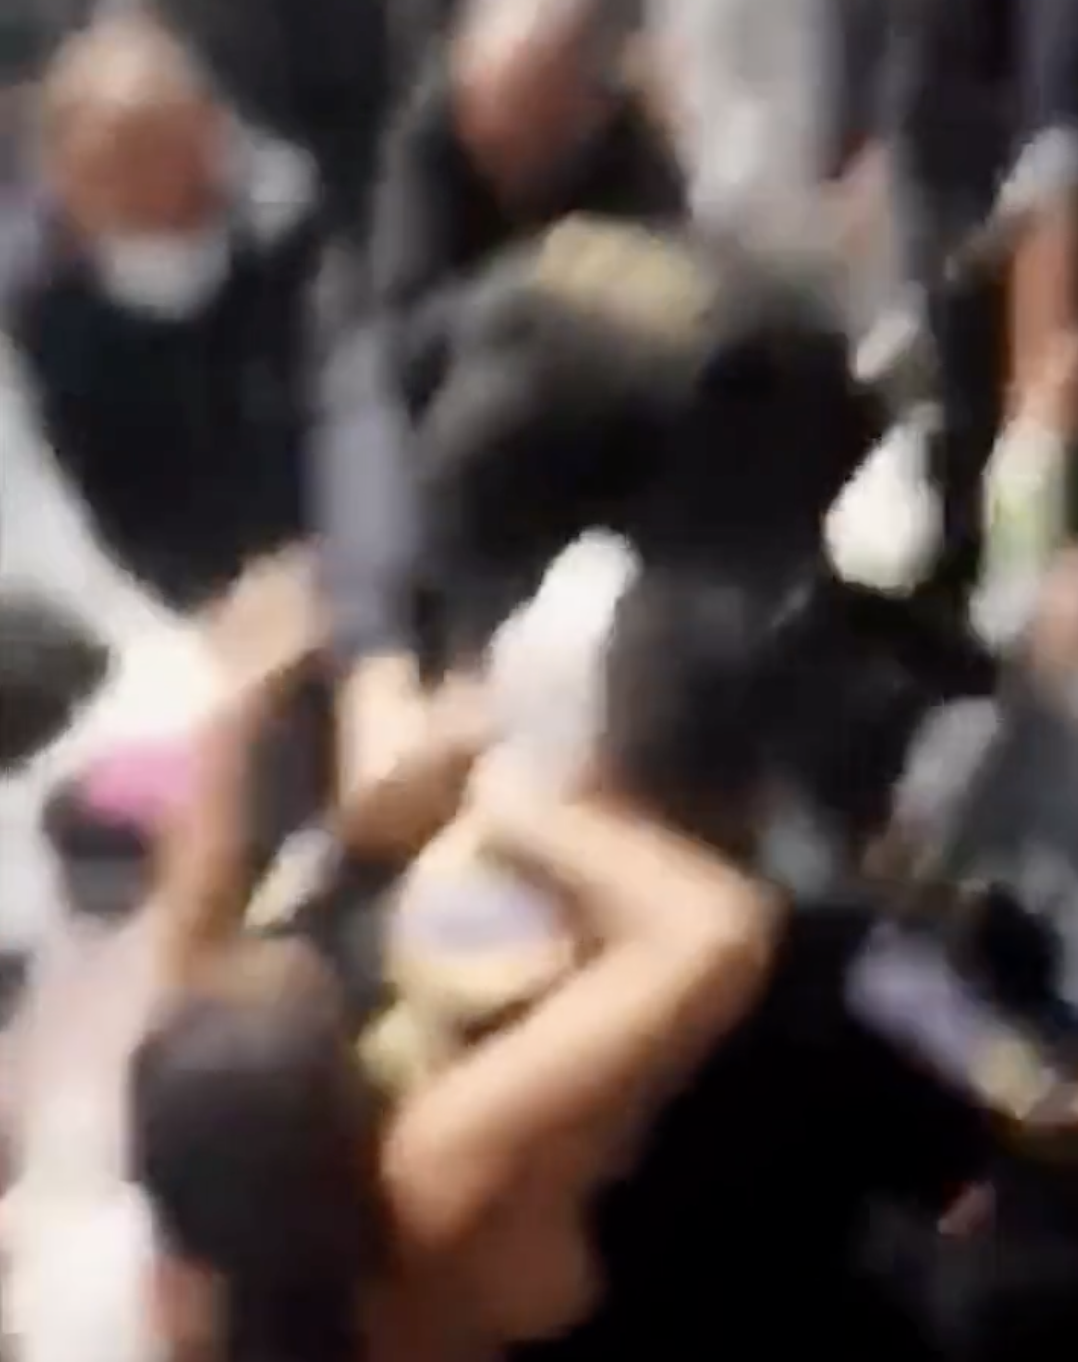 Η αστυνομία ξανά στο στόχαστρο, αυτή τη φορά για όσα έγιναν στη Ζάκυνθο κατά Κουβανών μεταναστών-Βίντεο